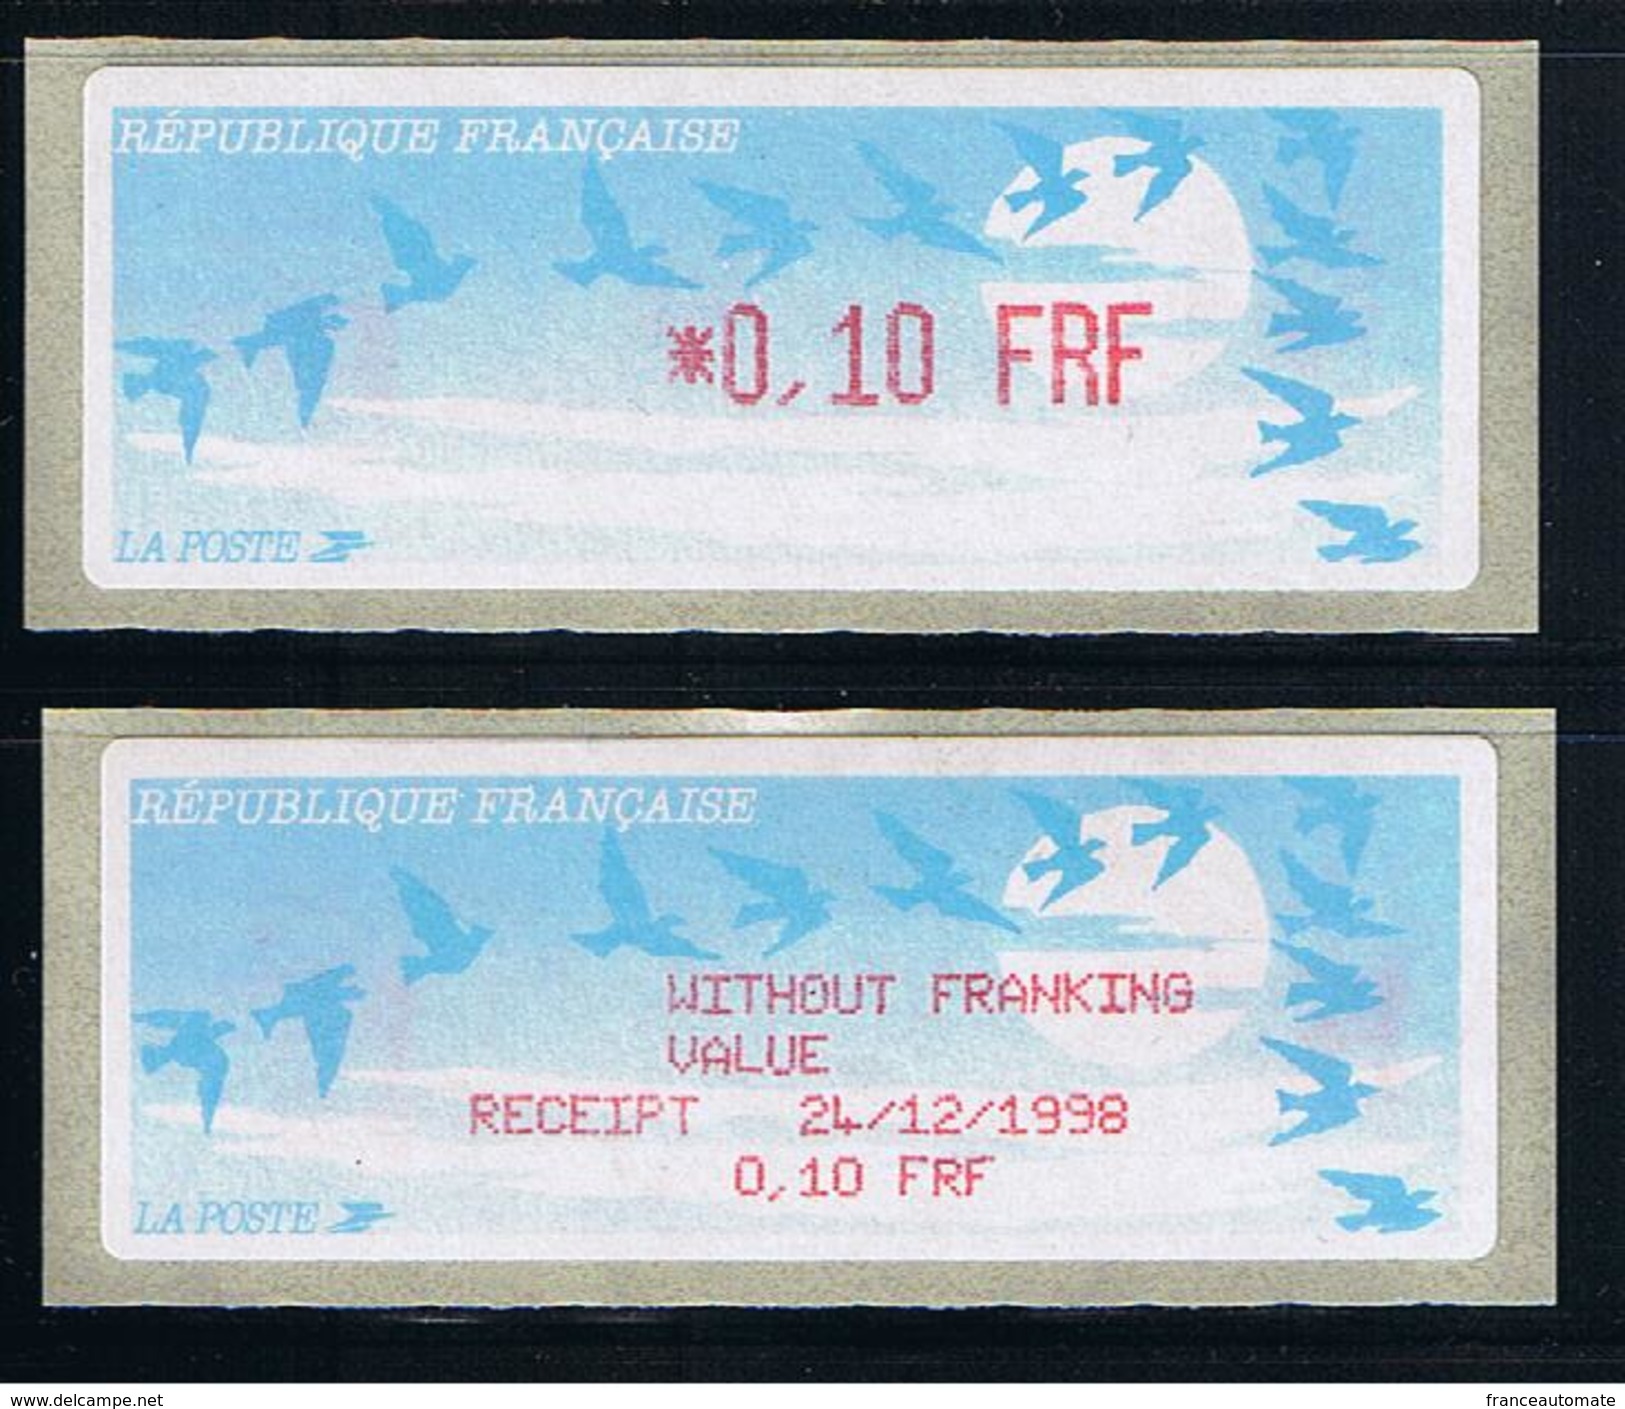 ATMS, LISA1, FRF, OISEAUX DE JUBERT, 0.10, Avec Reçu FRF En Anglais. Programme De La Préparation à L'Euro. - 1990 « Oiseaux De Jubert »